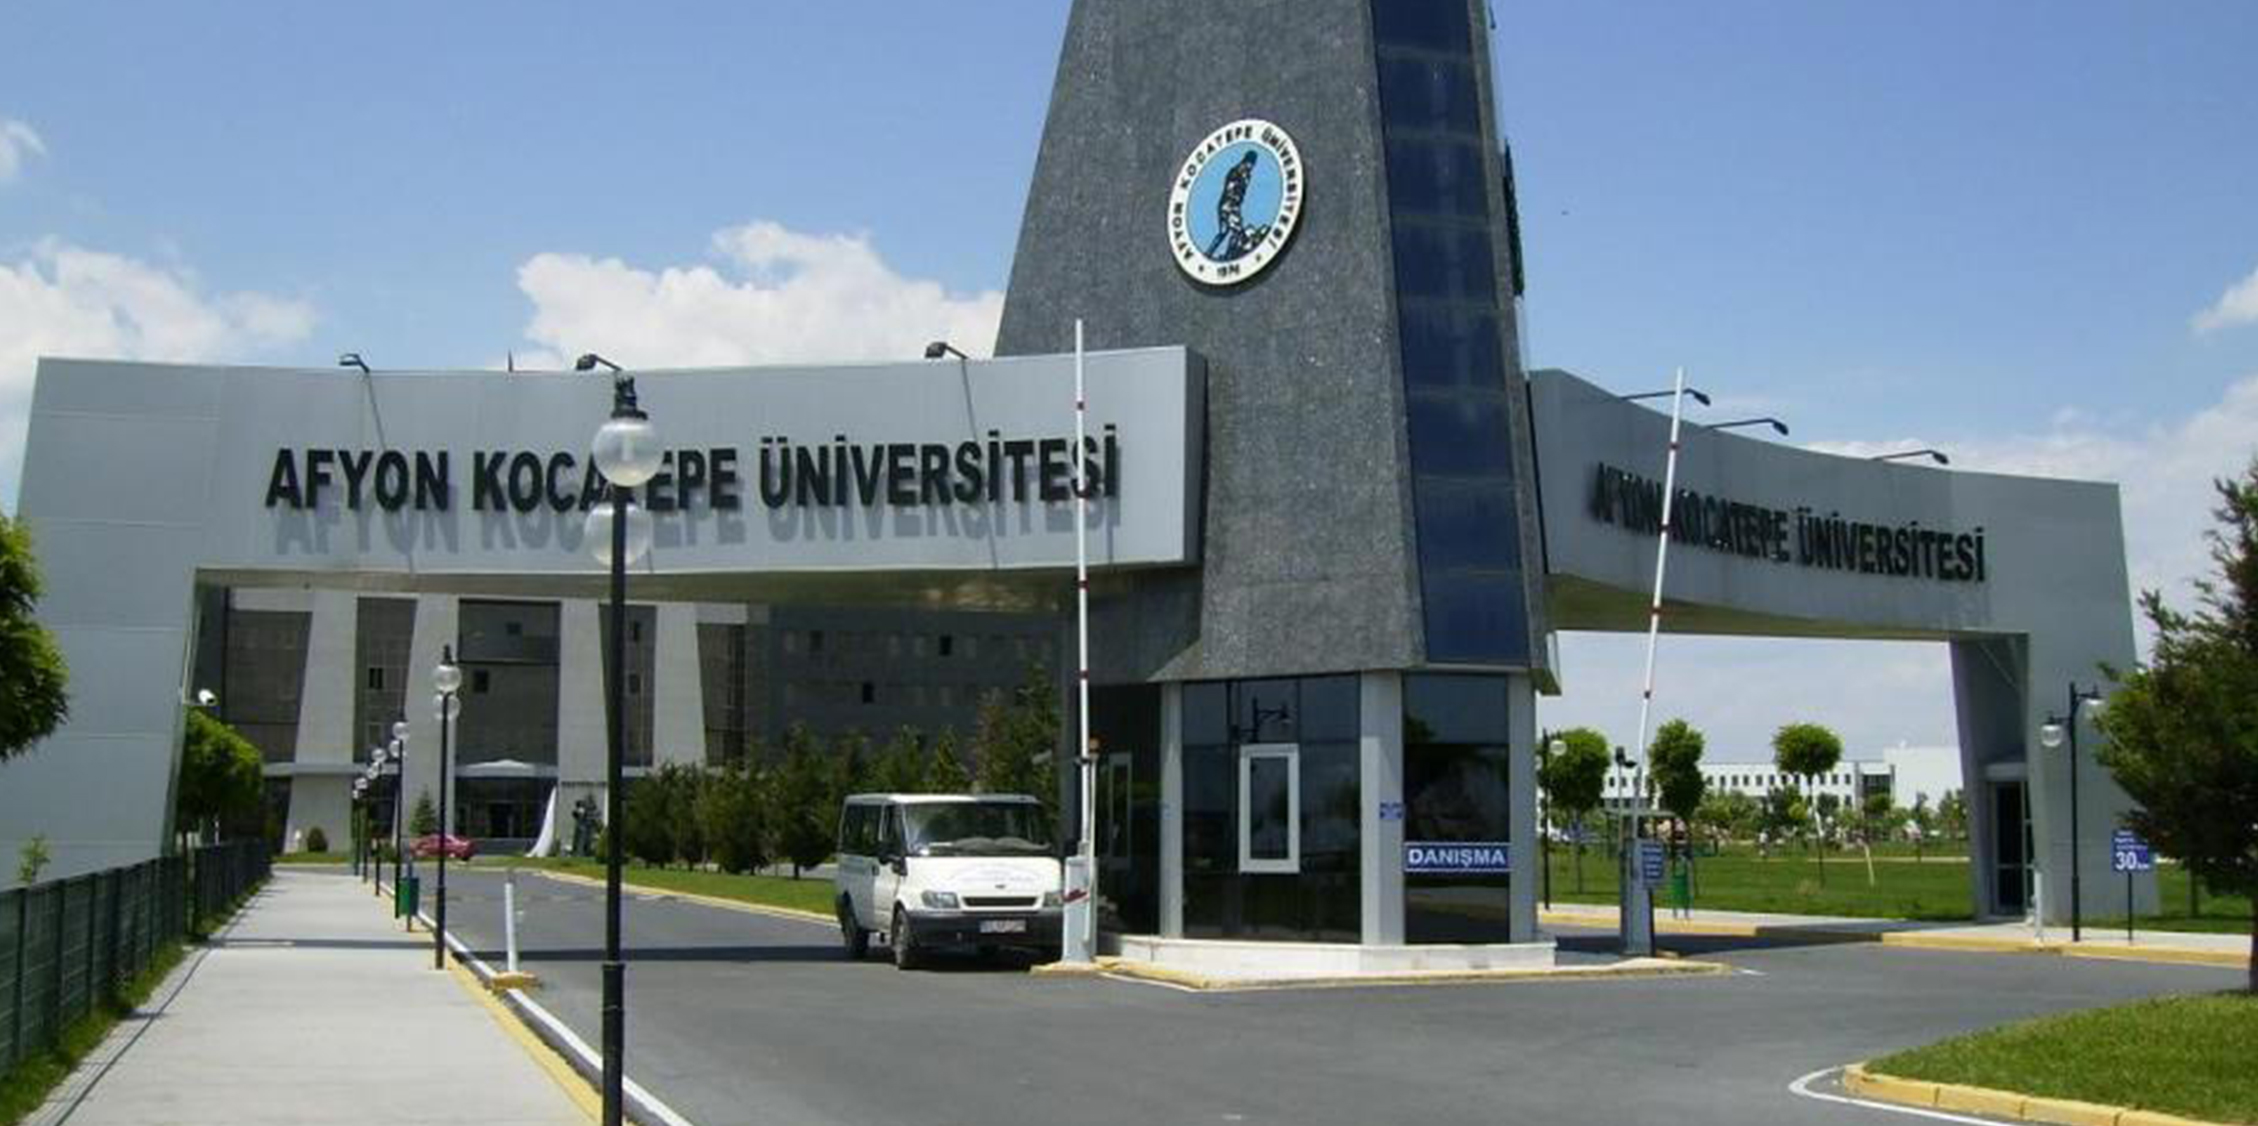 afyonkocatepe universitesi find and study 1 - Afyon Kocatepe University